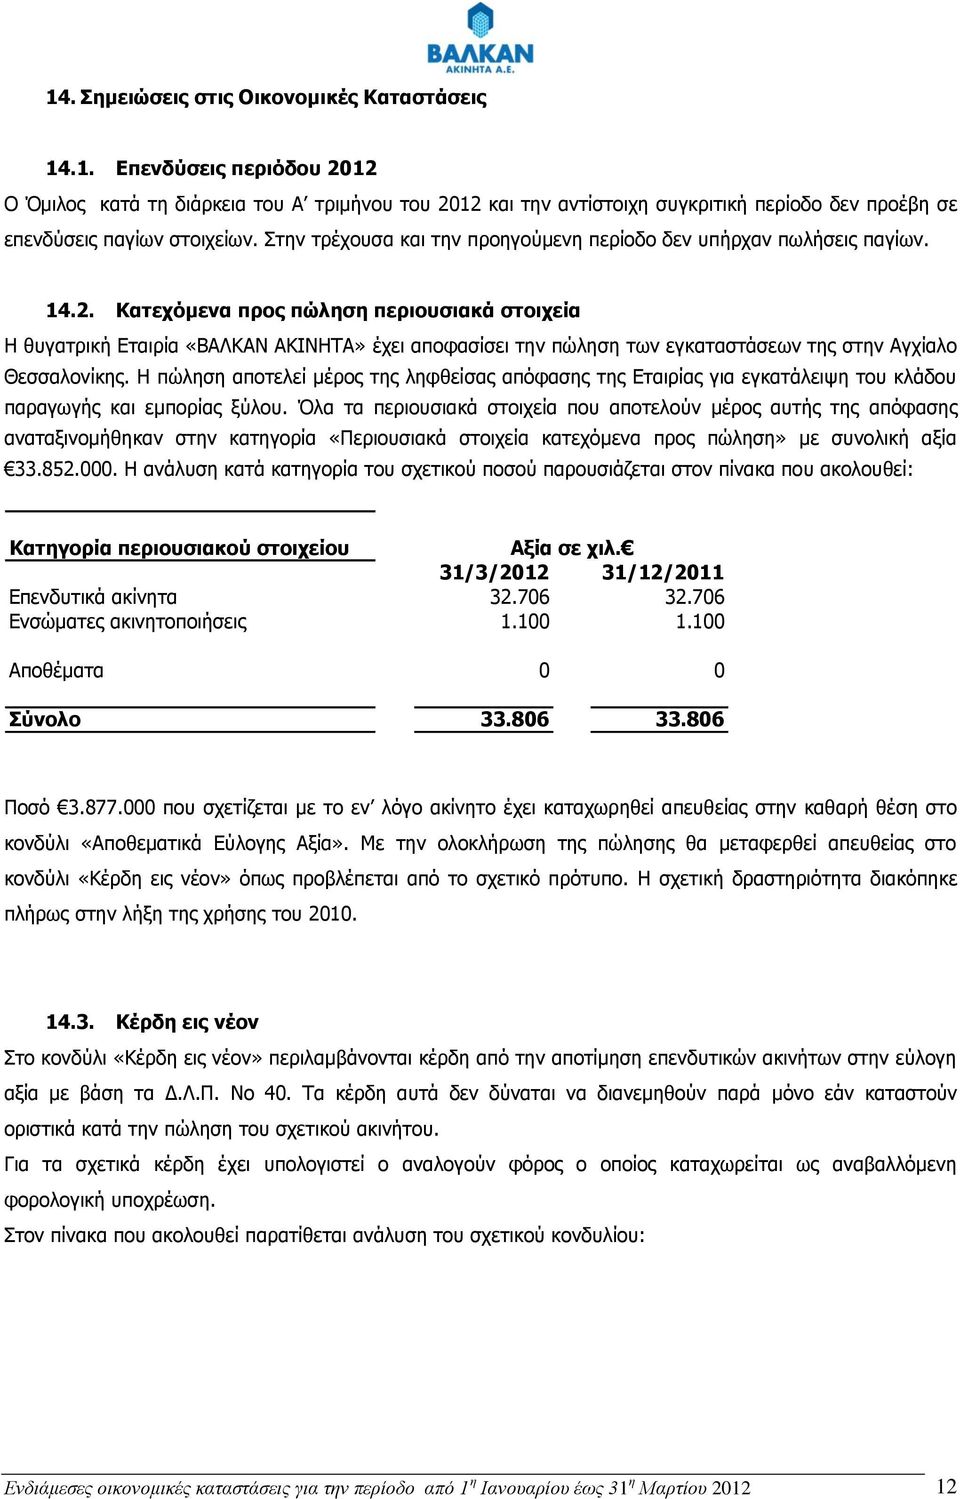 Κατεχόμενα προς πώληση περιουσιακά στοιχεία Η θυγατρική Εταιρία «ΒΑΛΚΑΝ ΑΚΙΝΗΤΑ» έχει αποφασίσει την πώληση των εγκαταστάσεων της στην Αγχίαλο Θεσσαλονίκης.